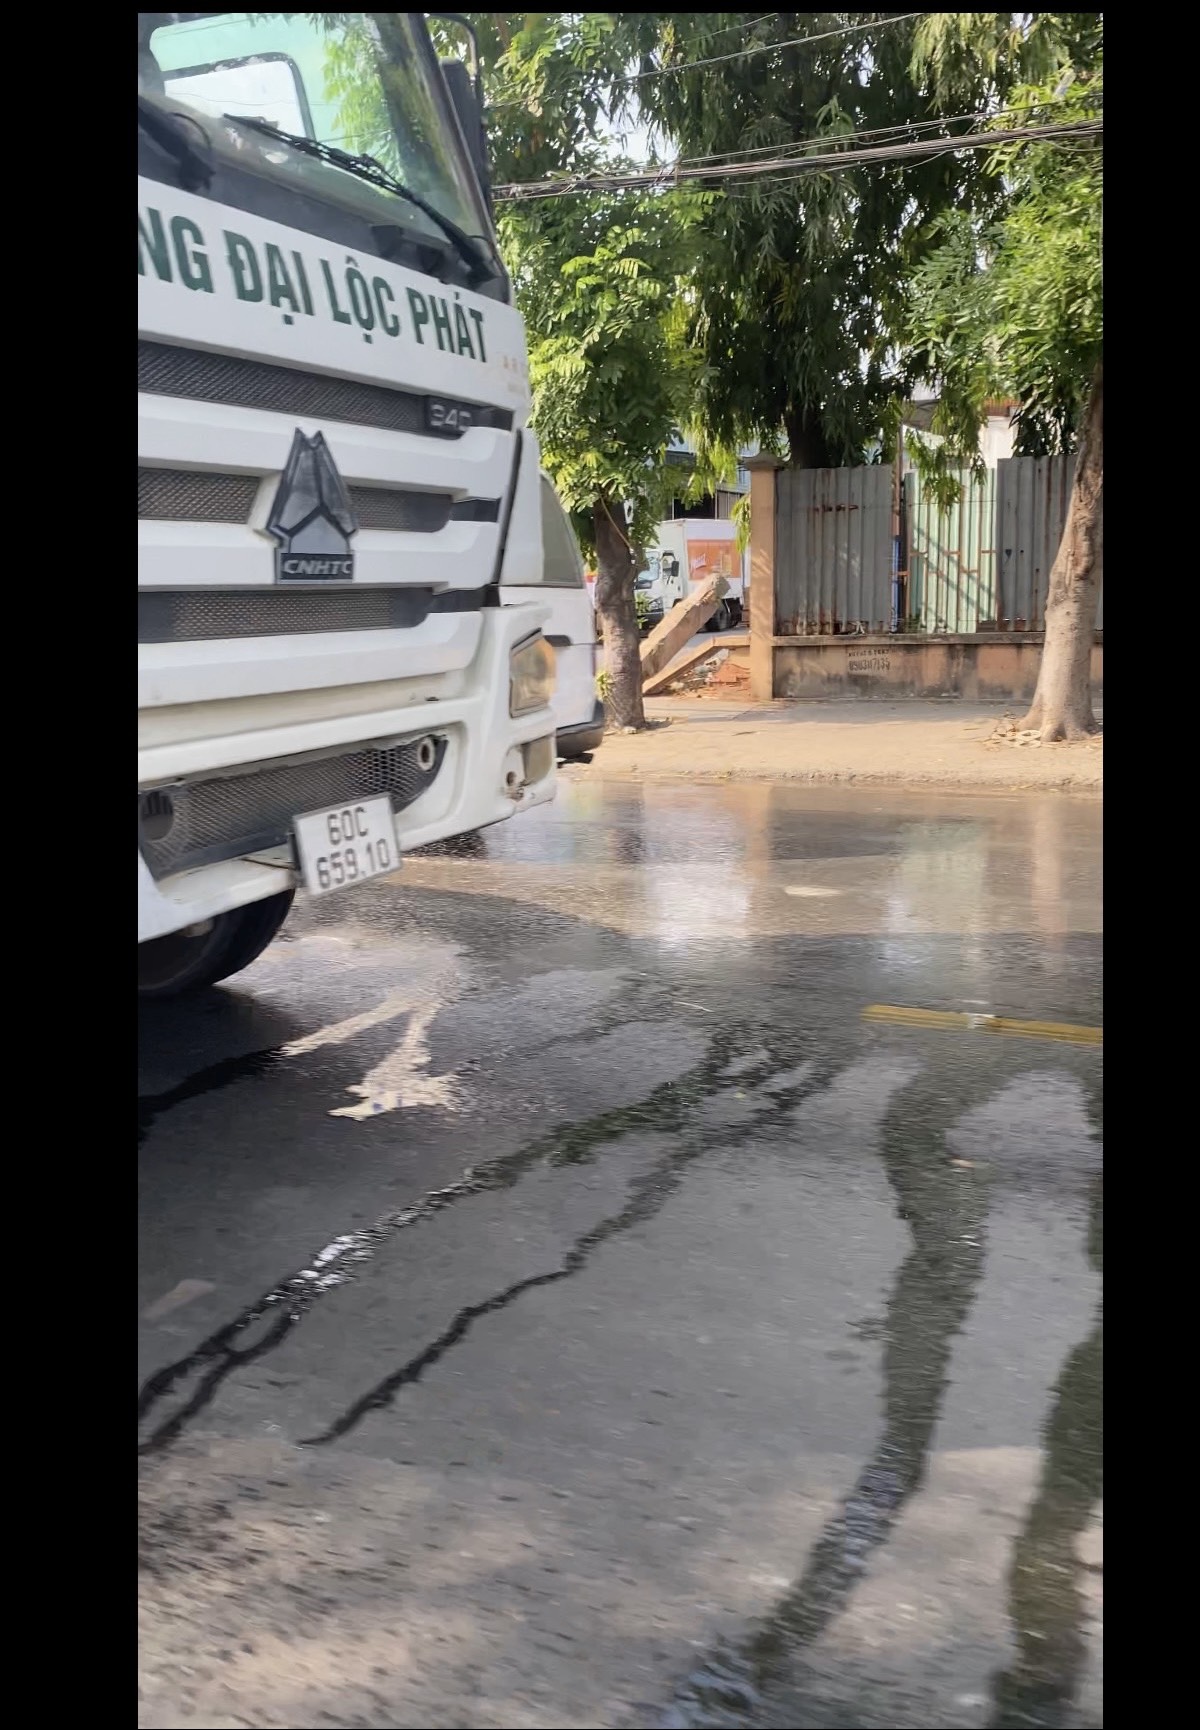 TP. Hồ Chí Minh: Clip Xe trộn bê tông có dòng chữ Đại Lộc Phát “ngang nhiên” vừa đi vừa xả nước xuống lòng đường?